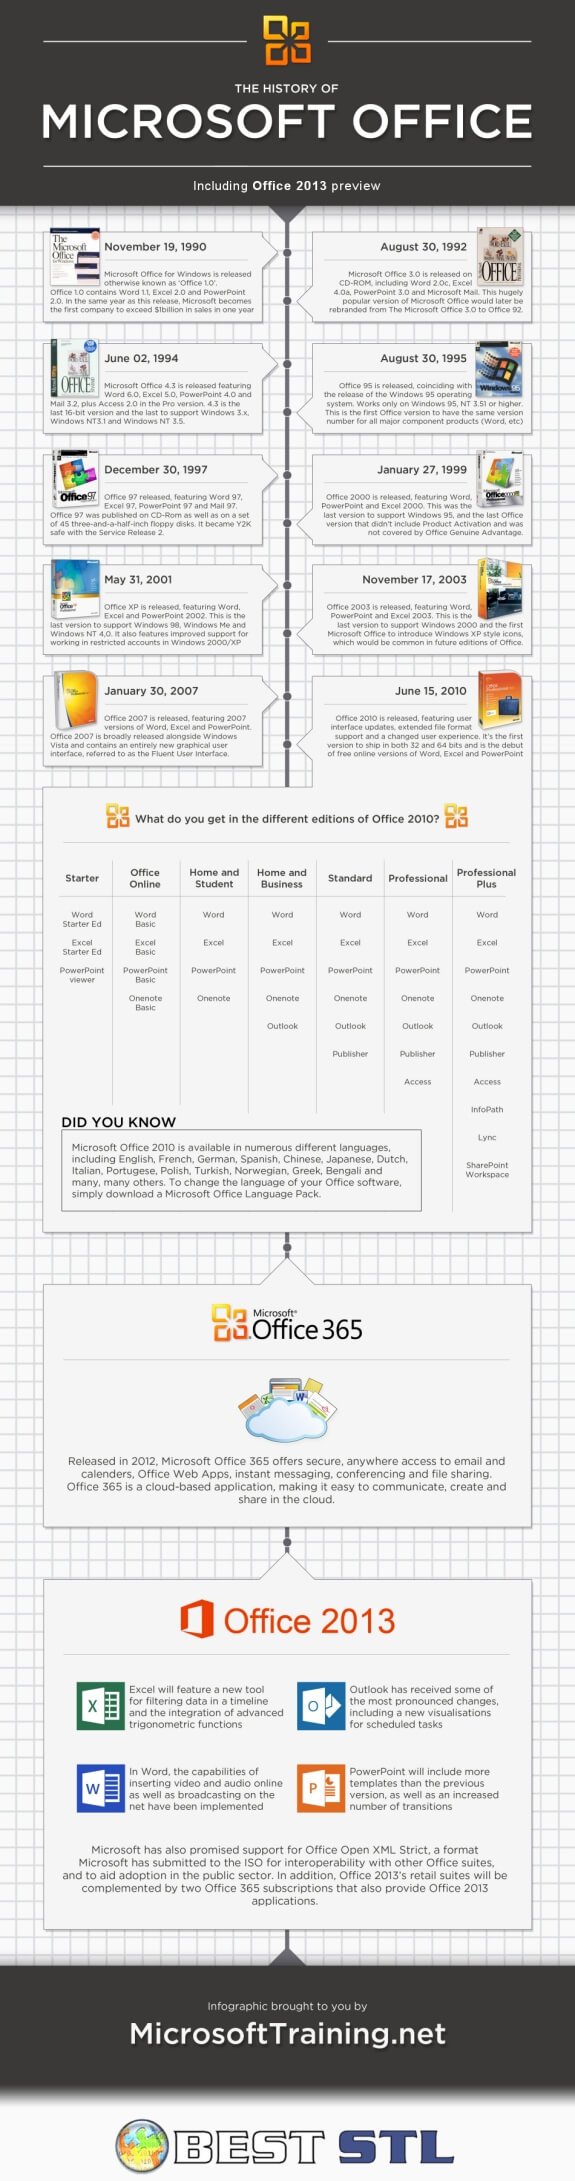 La storia di Microsoft Office, dal '90 ad oggi